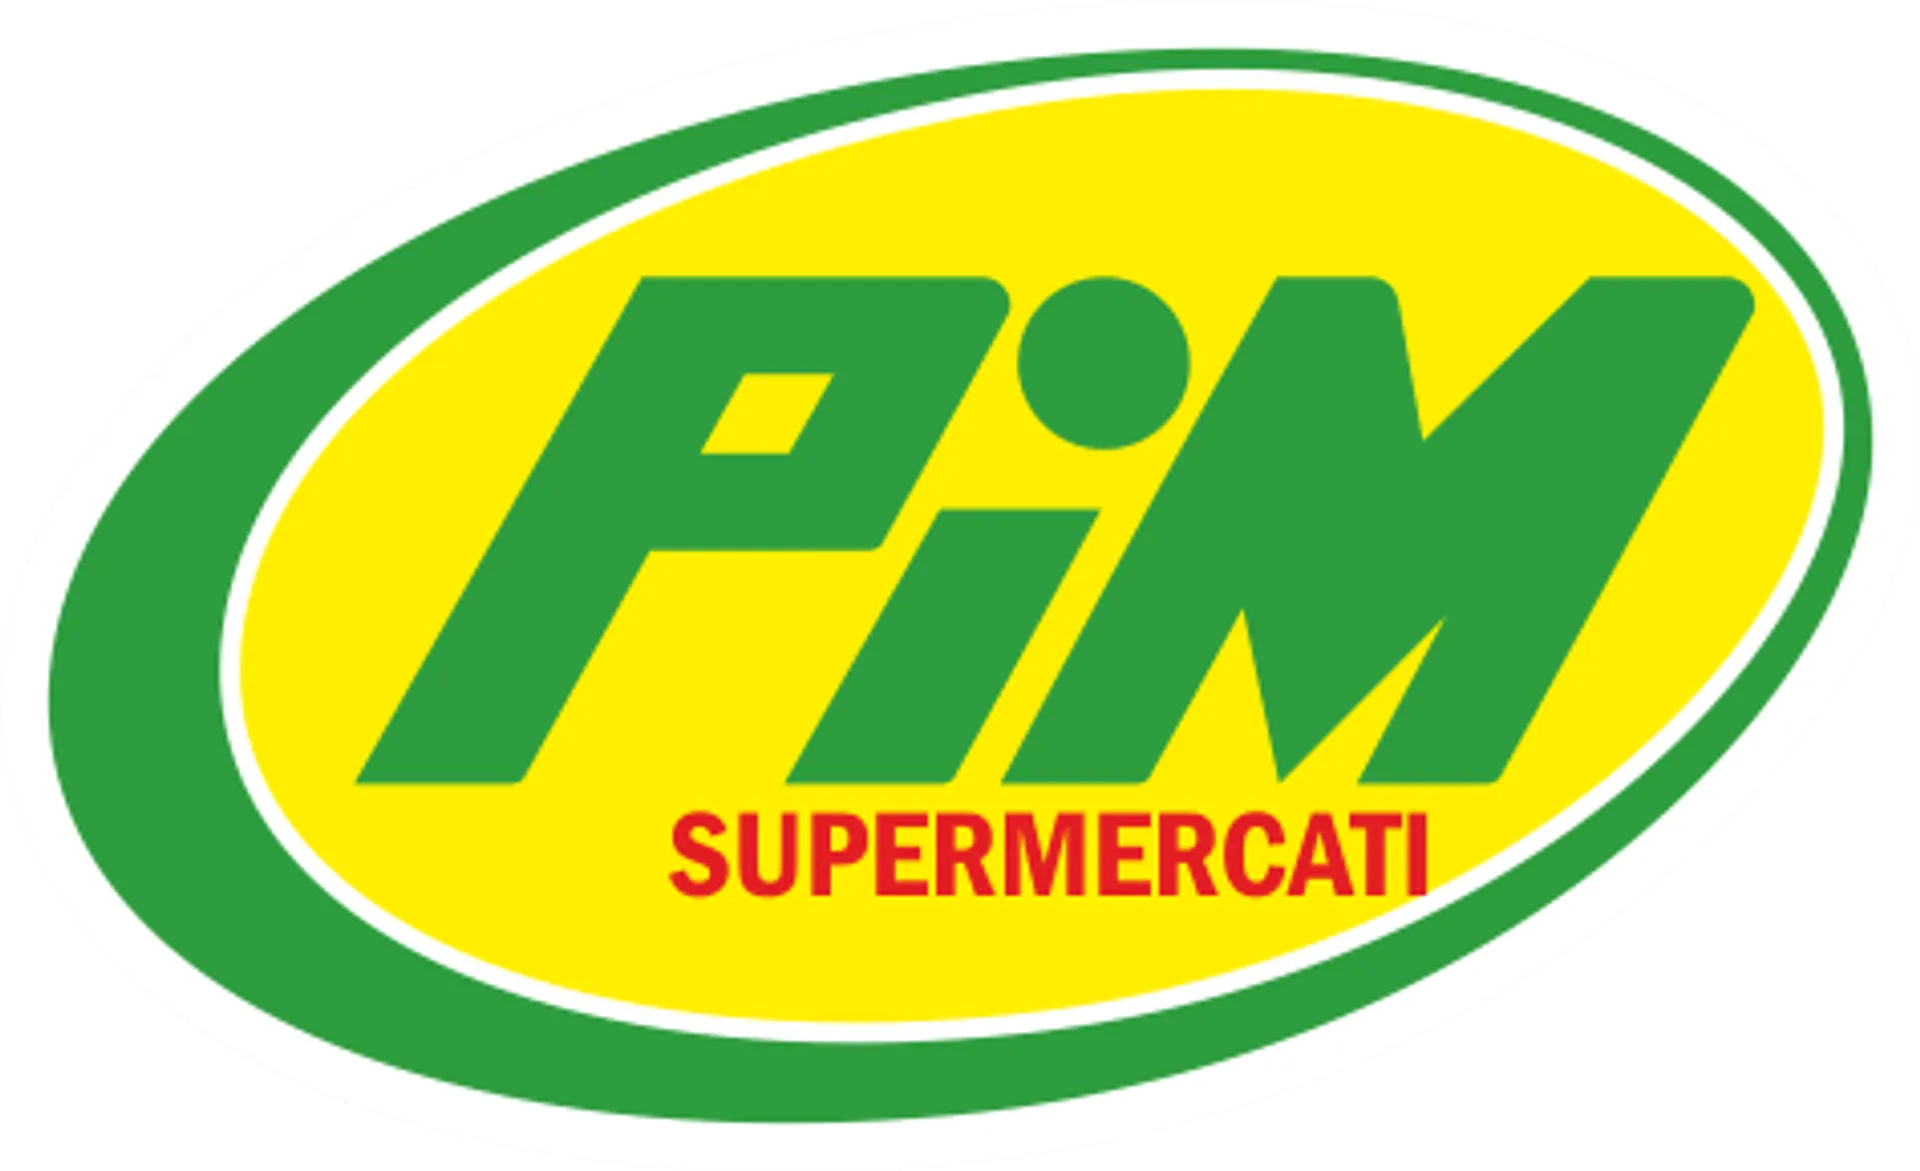 PIM SUPERMERCATI logo del volantino attuale